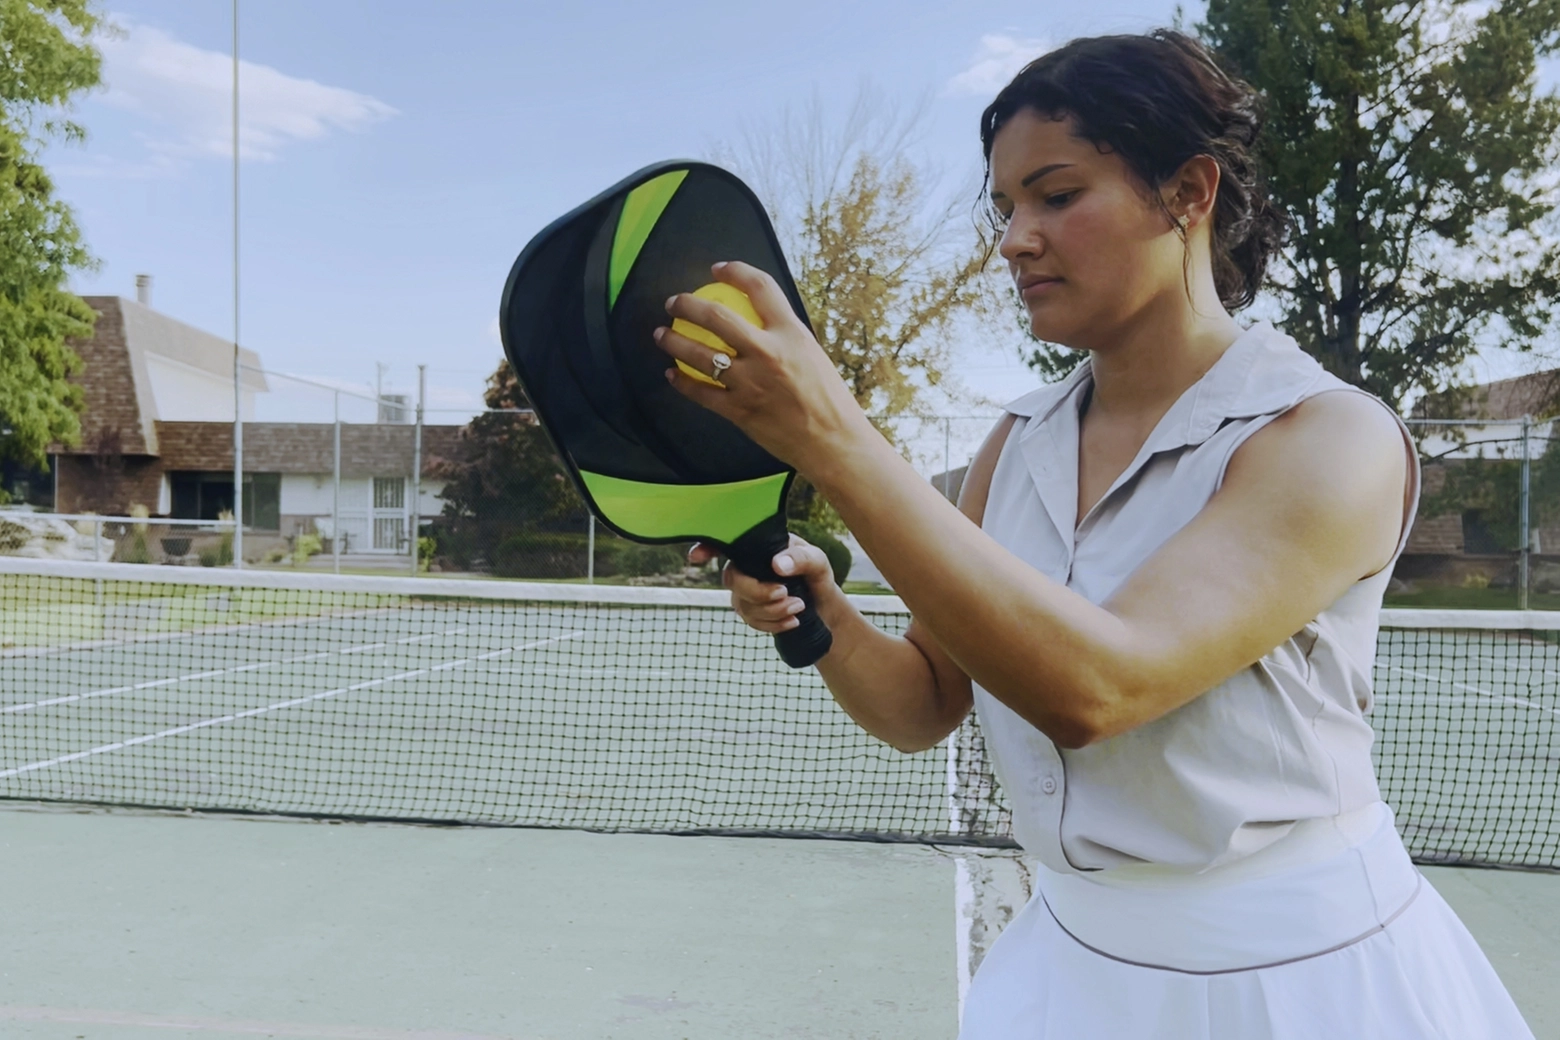 Il pickleball è uno sport che unisce principi di tennis, ping pong e badminton